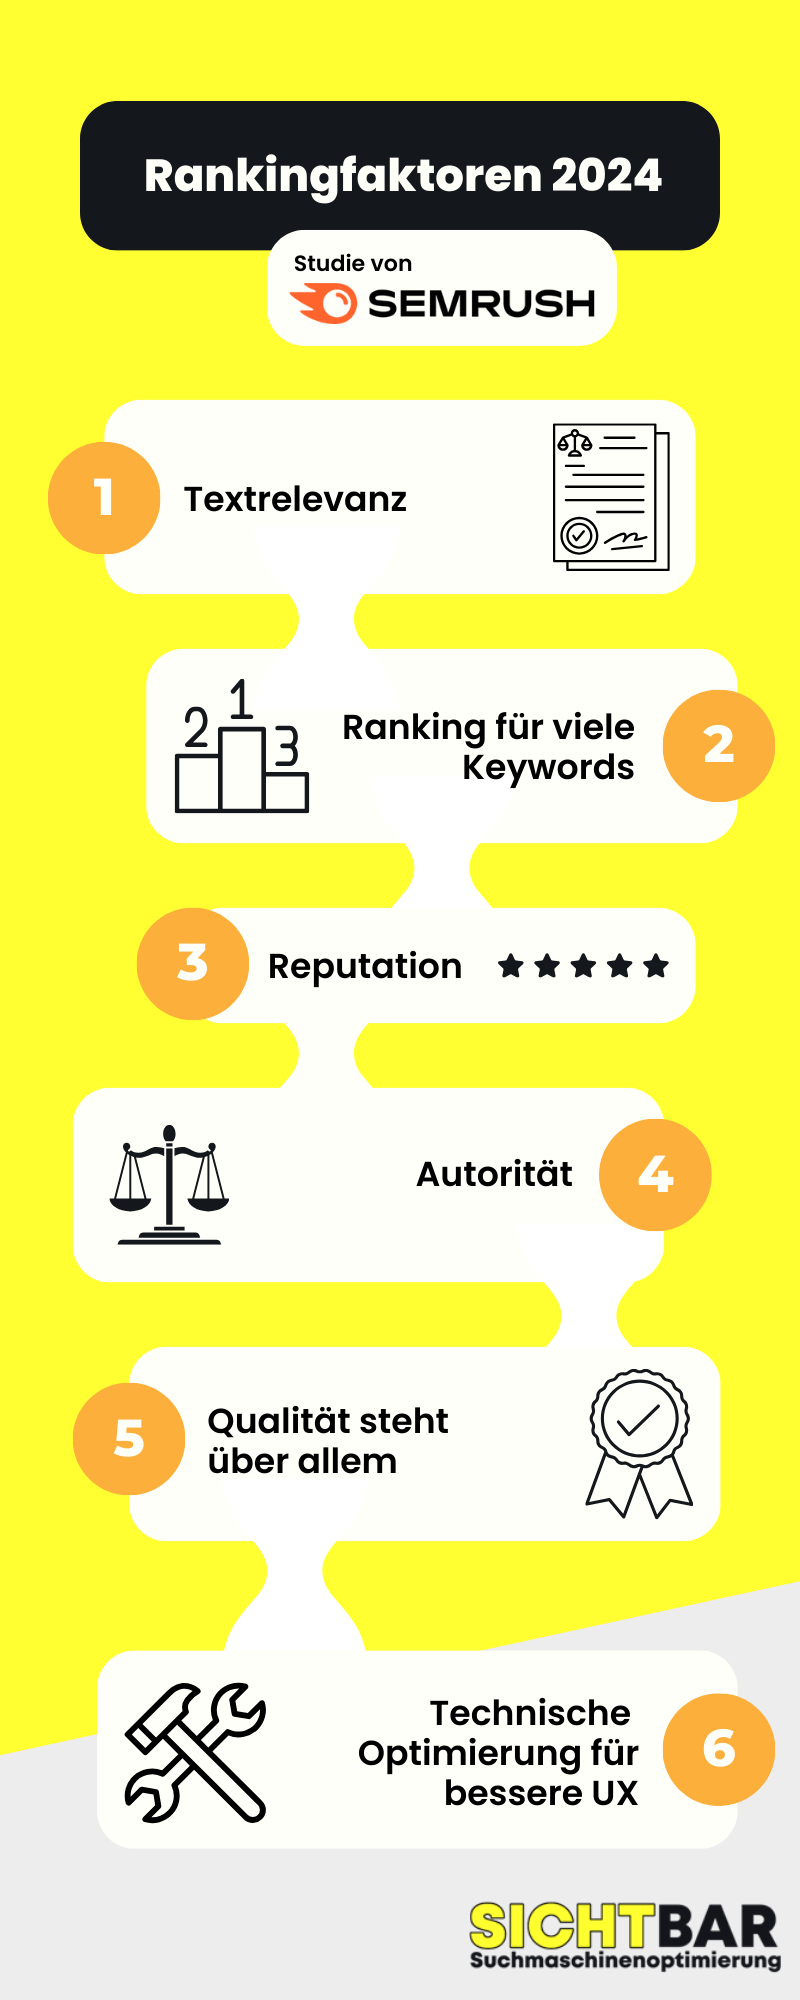 Rankingfaktoren 2024 laut Semrush:
1. Textrelevanz
2. Ranking für viele Keywords
3. Reputation
4. Autorität
5. Qualität steht über allem
6. Technische Optimierung für bessere UX